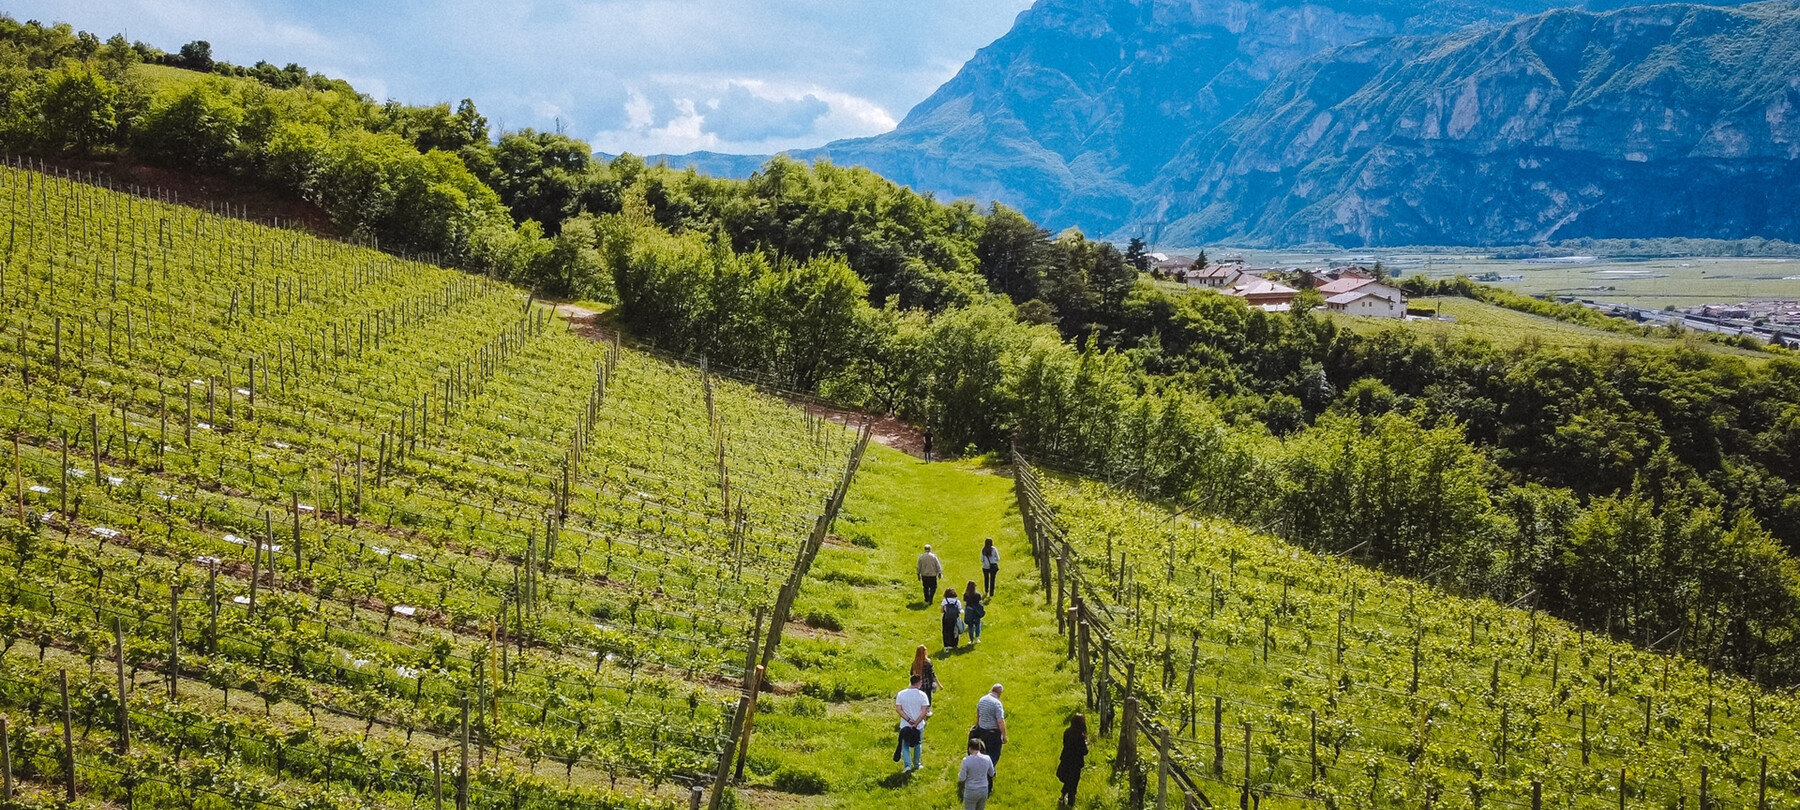 Turismo birrario del Trentino, da Lavis alla Val di Non